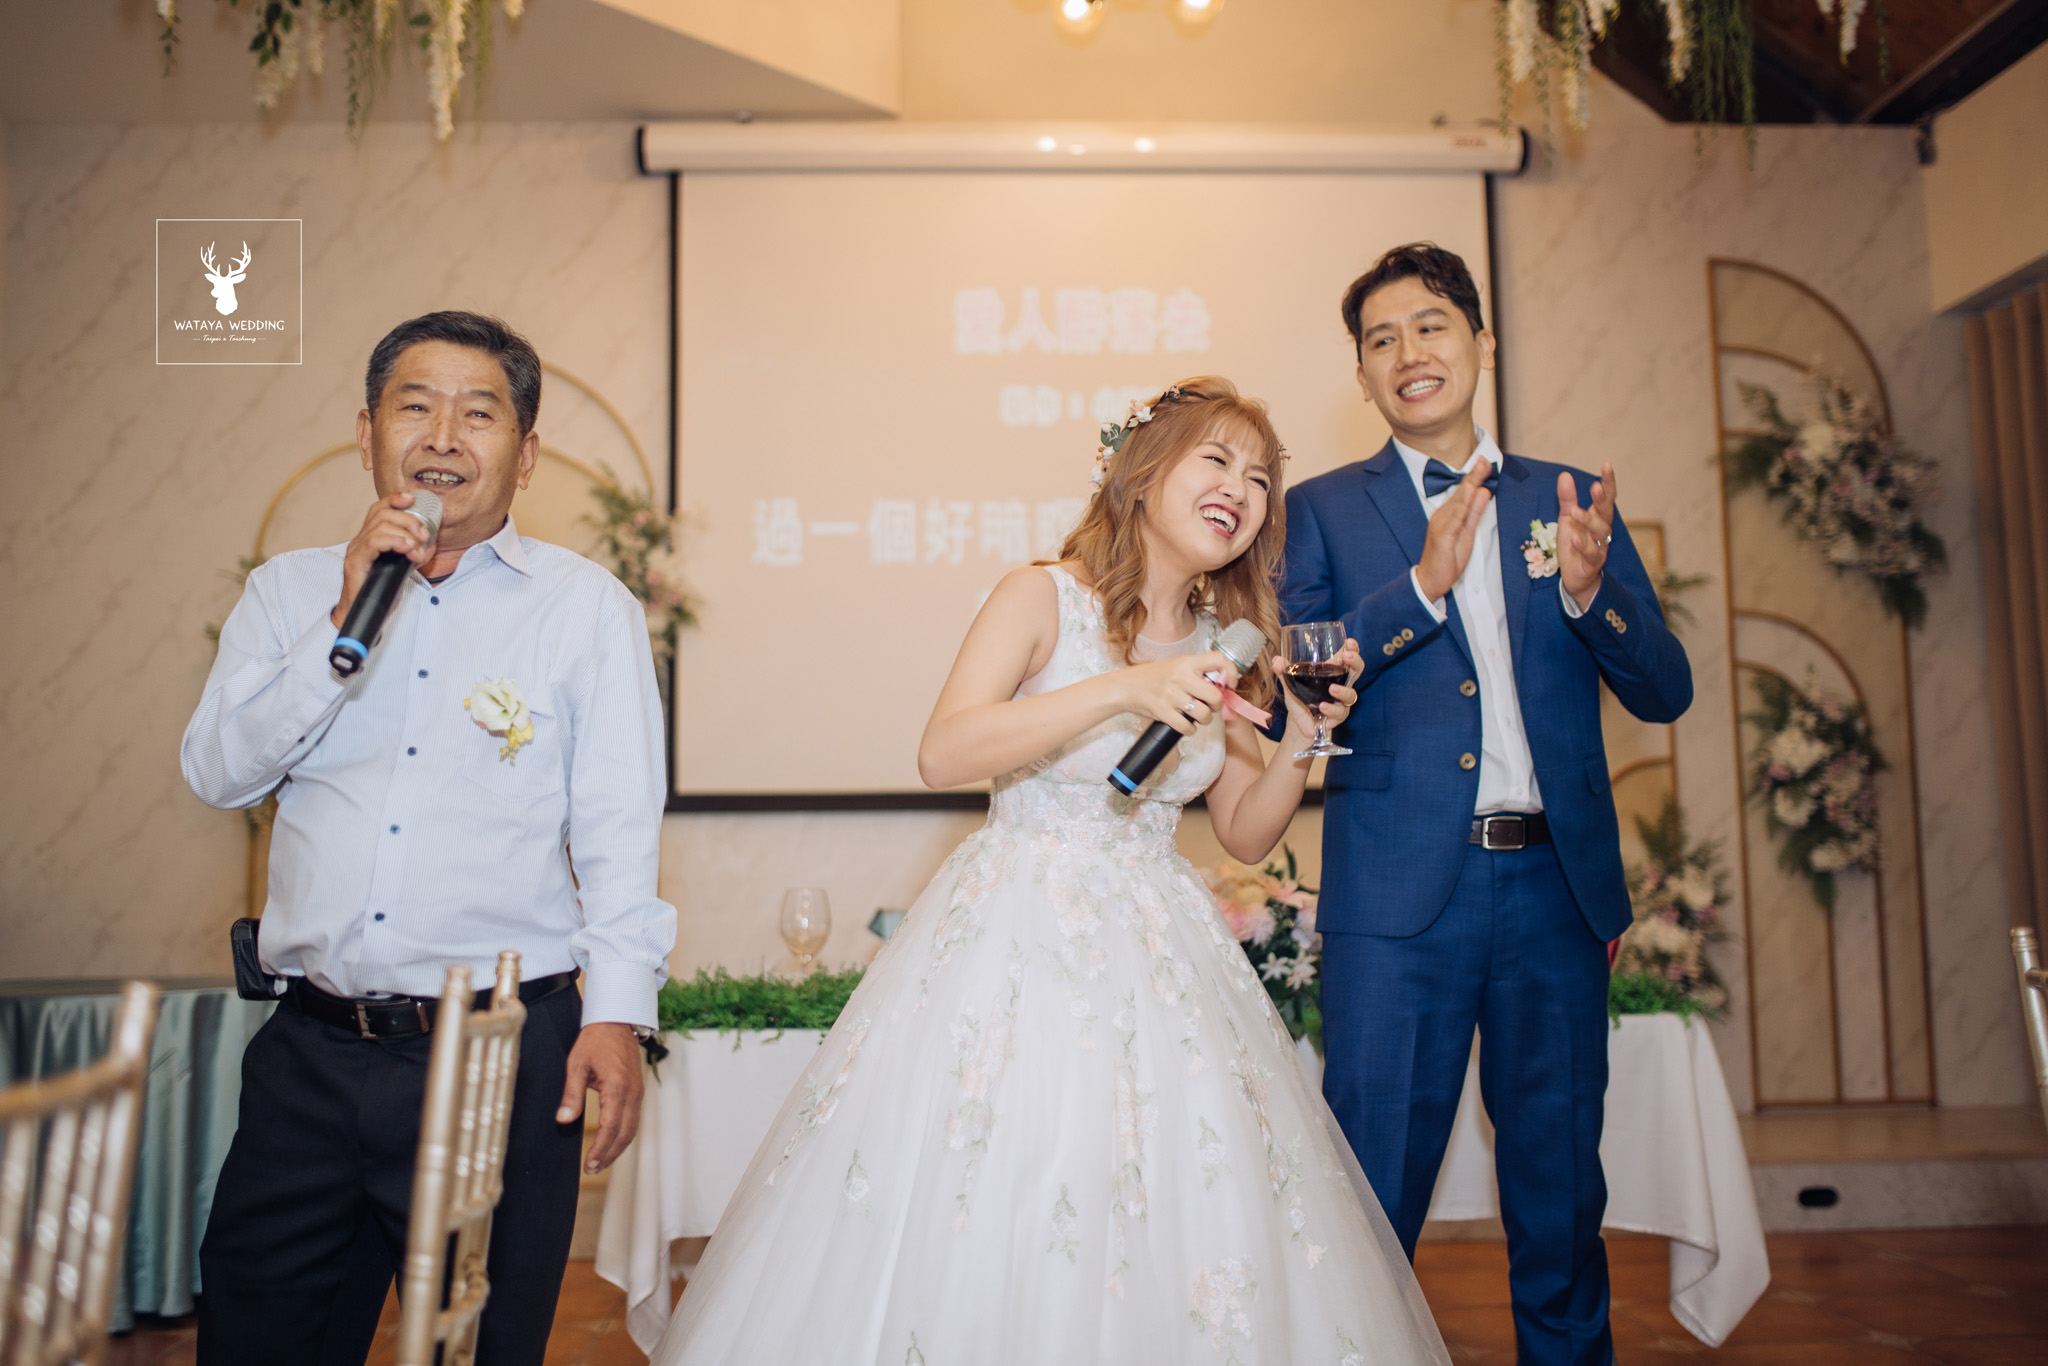 台中綿谷婚禮平面攝影 (55)